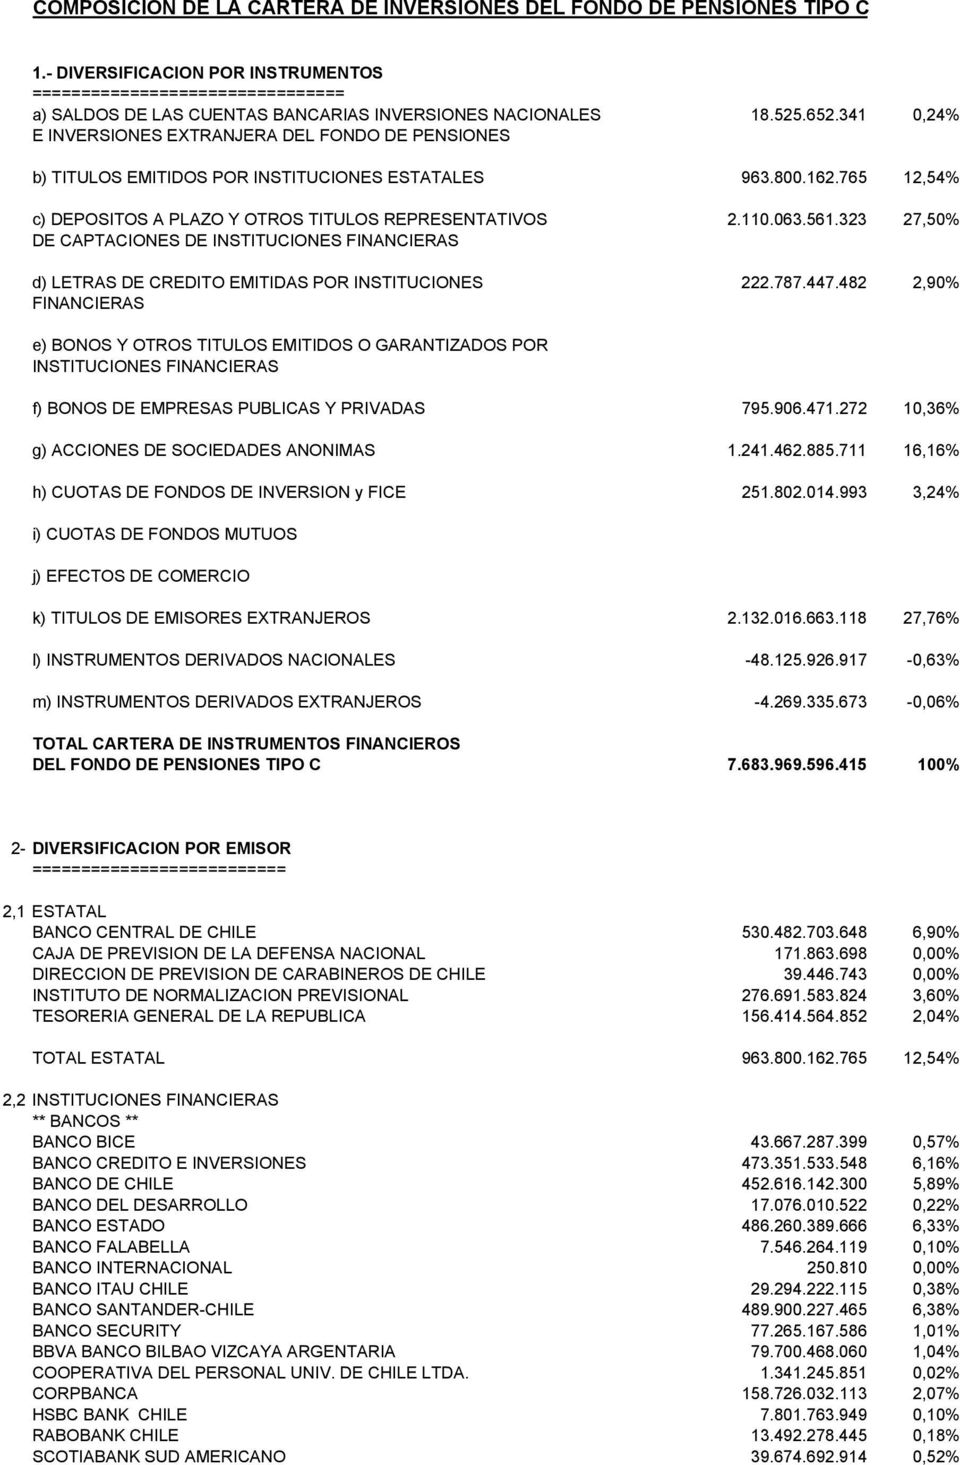 341 0,24% E INVERSIONES EXTRANJERA DEL FONDO DE PENSIONES b) TITULOS EMITIDOS POR INSTITUCIONES ESTATALES 963.800.162.765 12,54% c) DEPOSITOS A PLAZO Y OTROS TITULOS REPRESENTATIVOS 2.110.063.561.